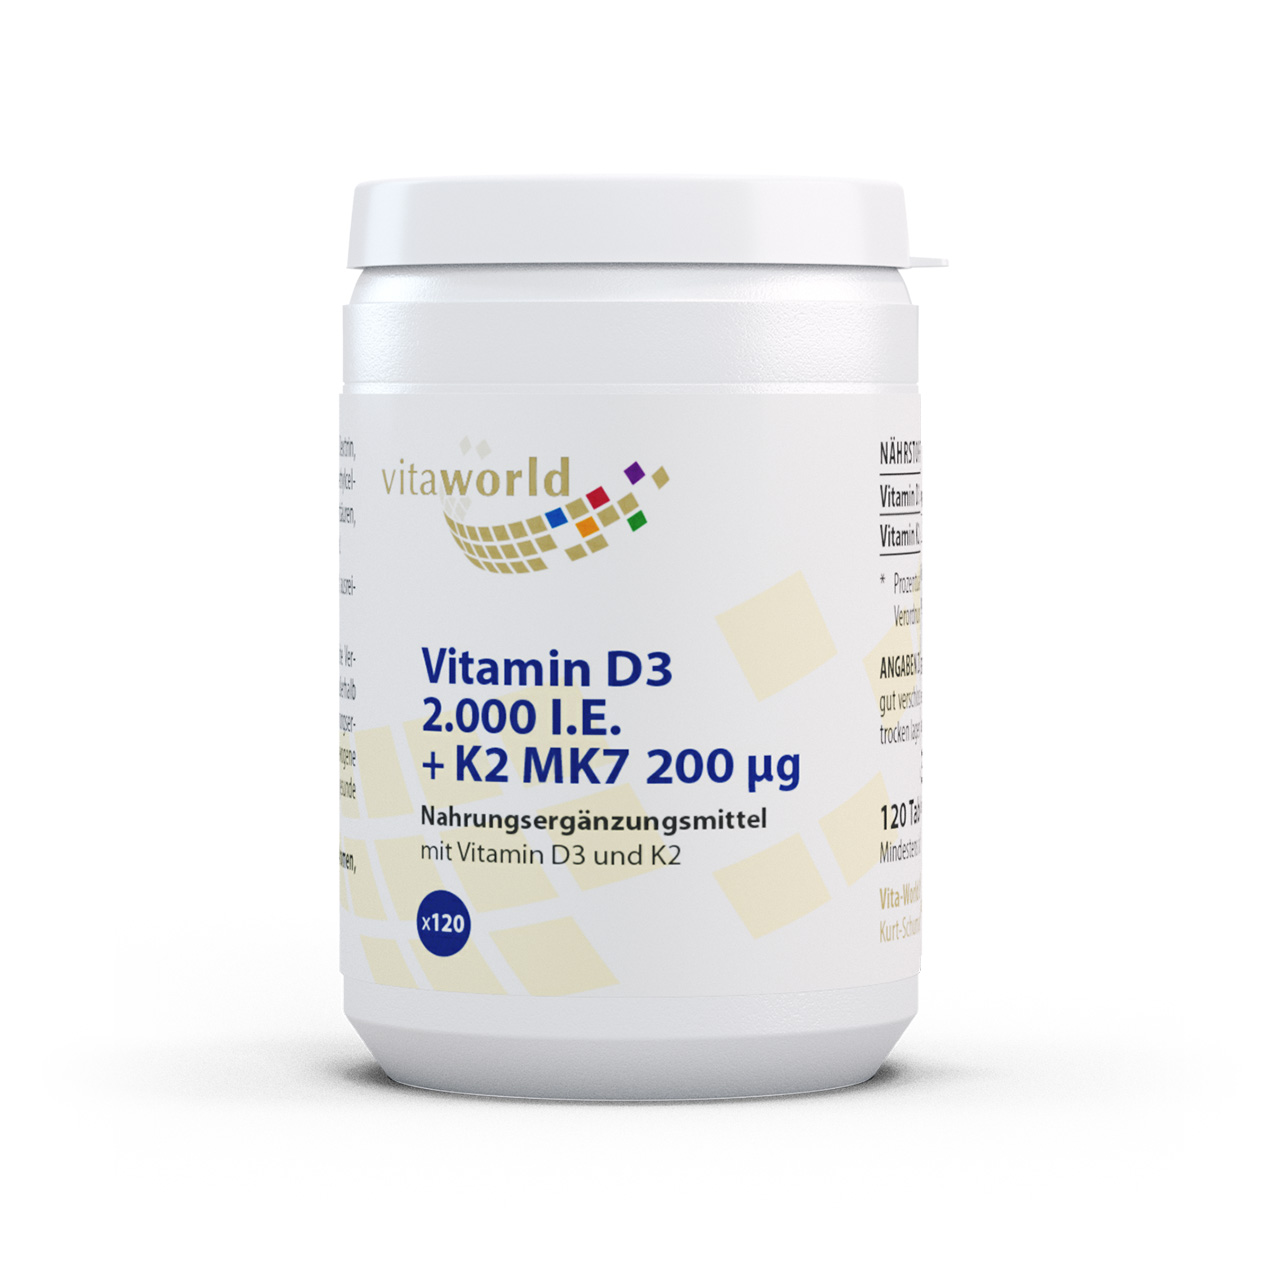 Vita World Vitamin D3 2000 I.E. + K2 MK7 200 µg | 120 Tabletten